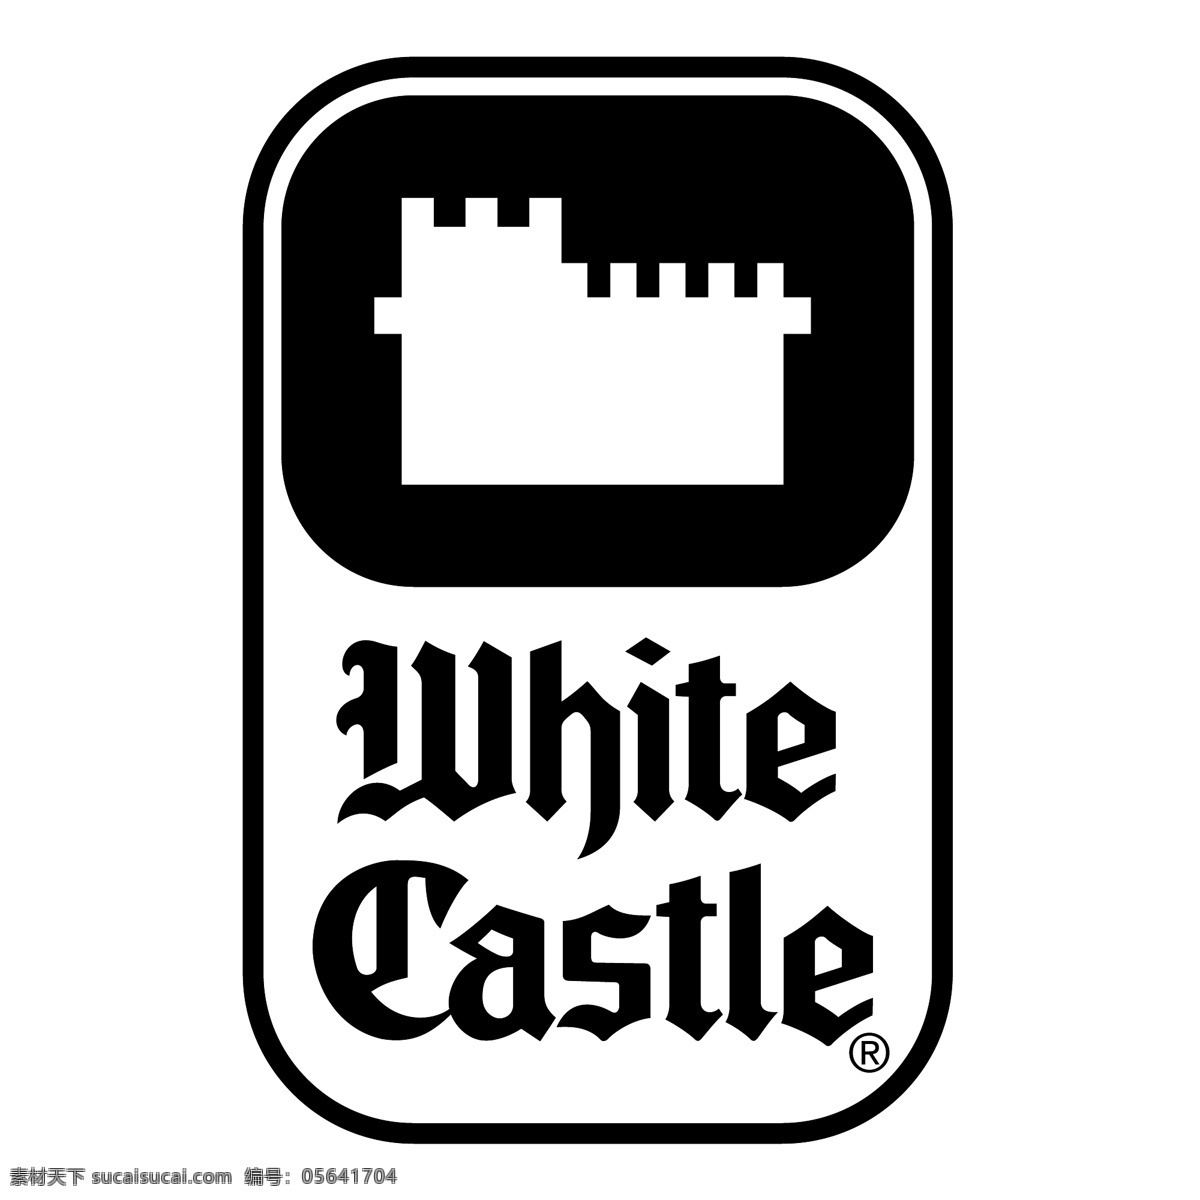 白色 白色城堡 城堡 矢量白色城堡 矢量 标志 黑色 向量 白色城堡向量 剪贴 画 艺术 载体 蓝色